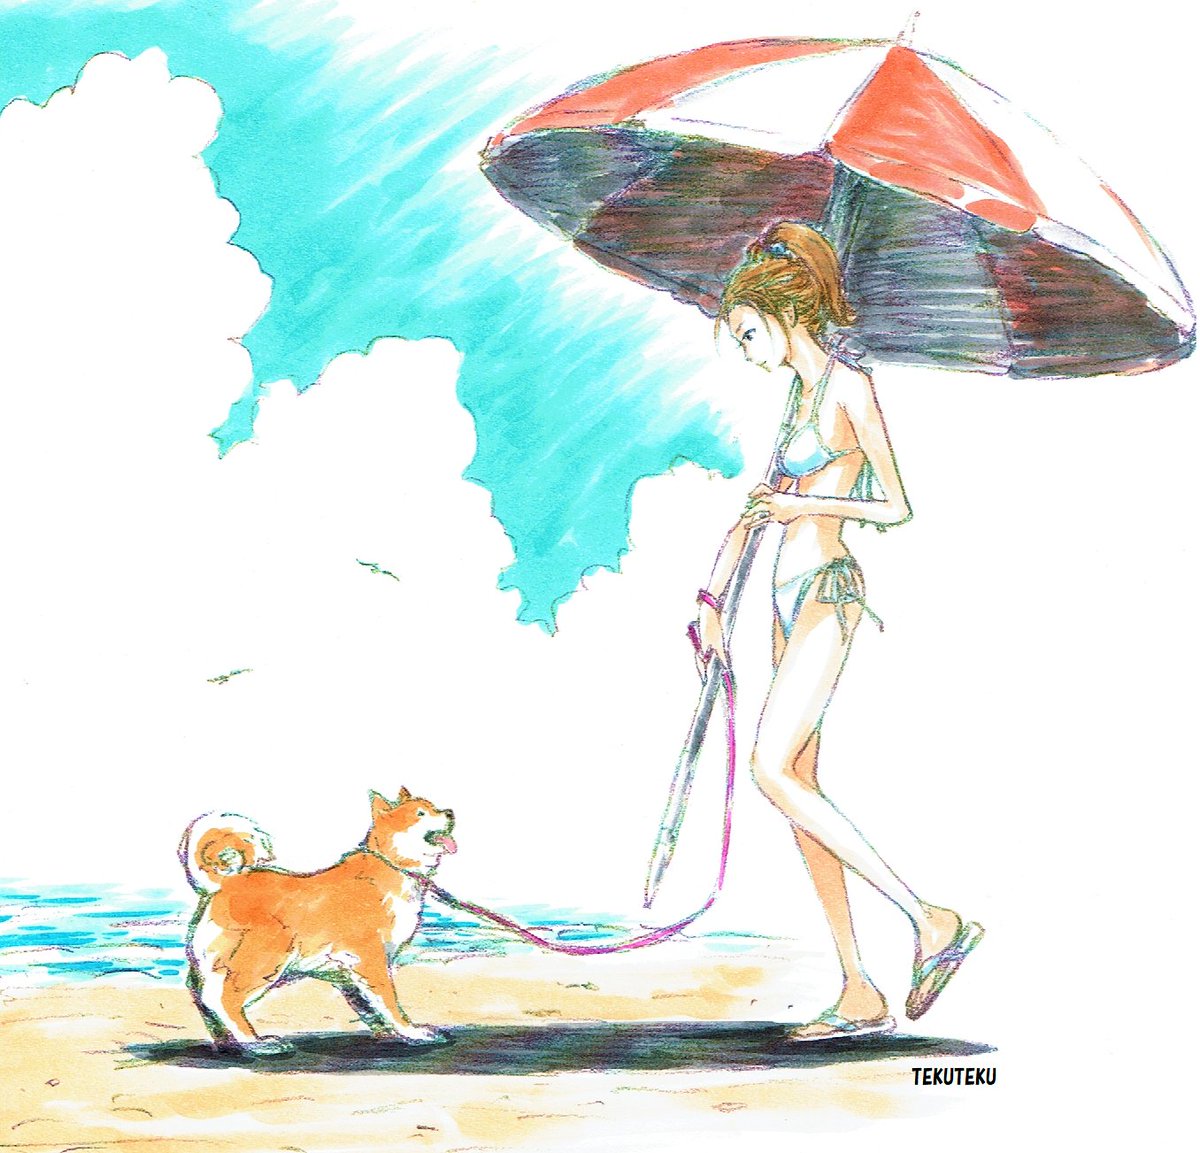 Tekuteku このタグ見た人は自創作でかっこいいと思う女性キャラの絵を載せる Illustration オリジナル イラスト オリキャラ 猫好き 柴犬 イラスト好きな人と繋がりたい